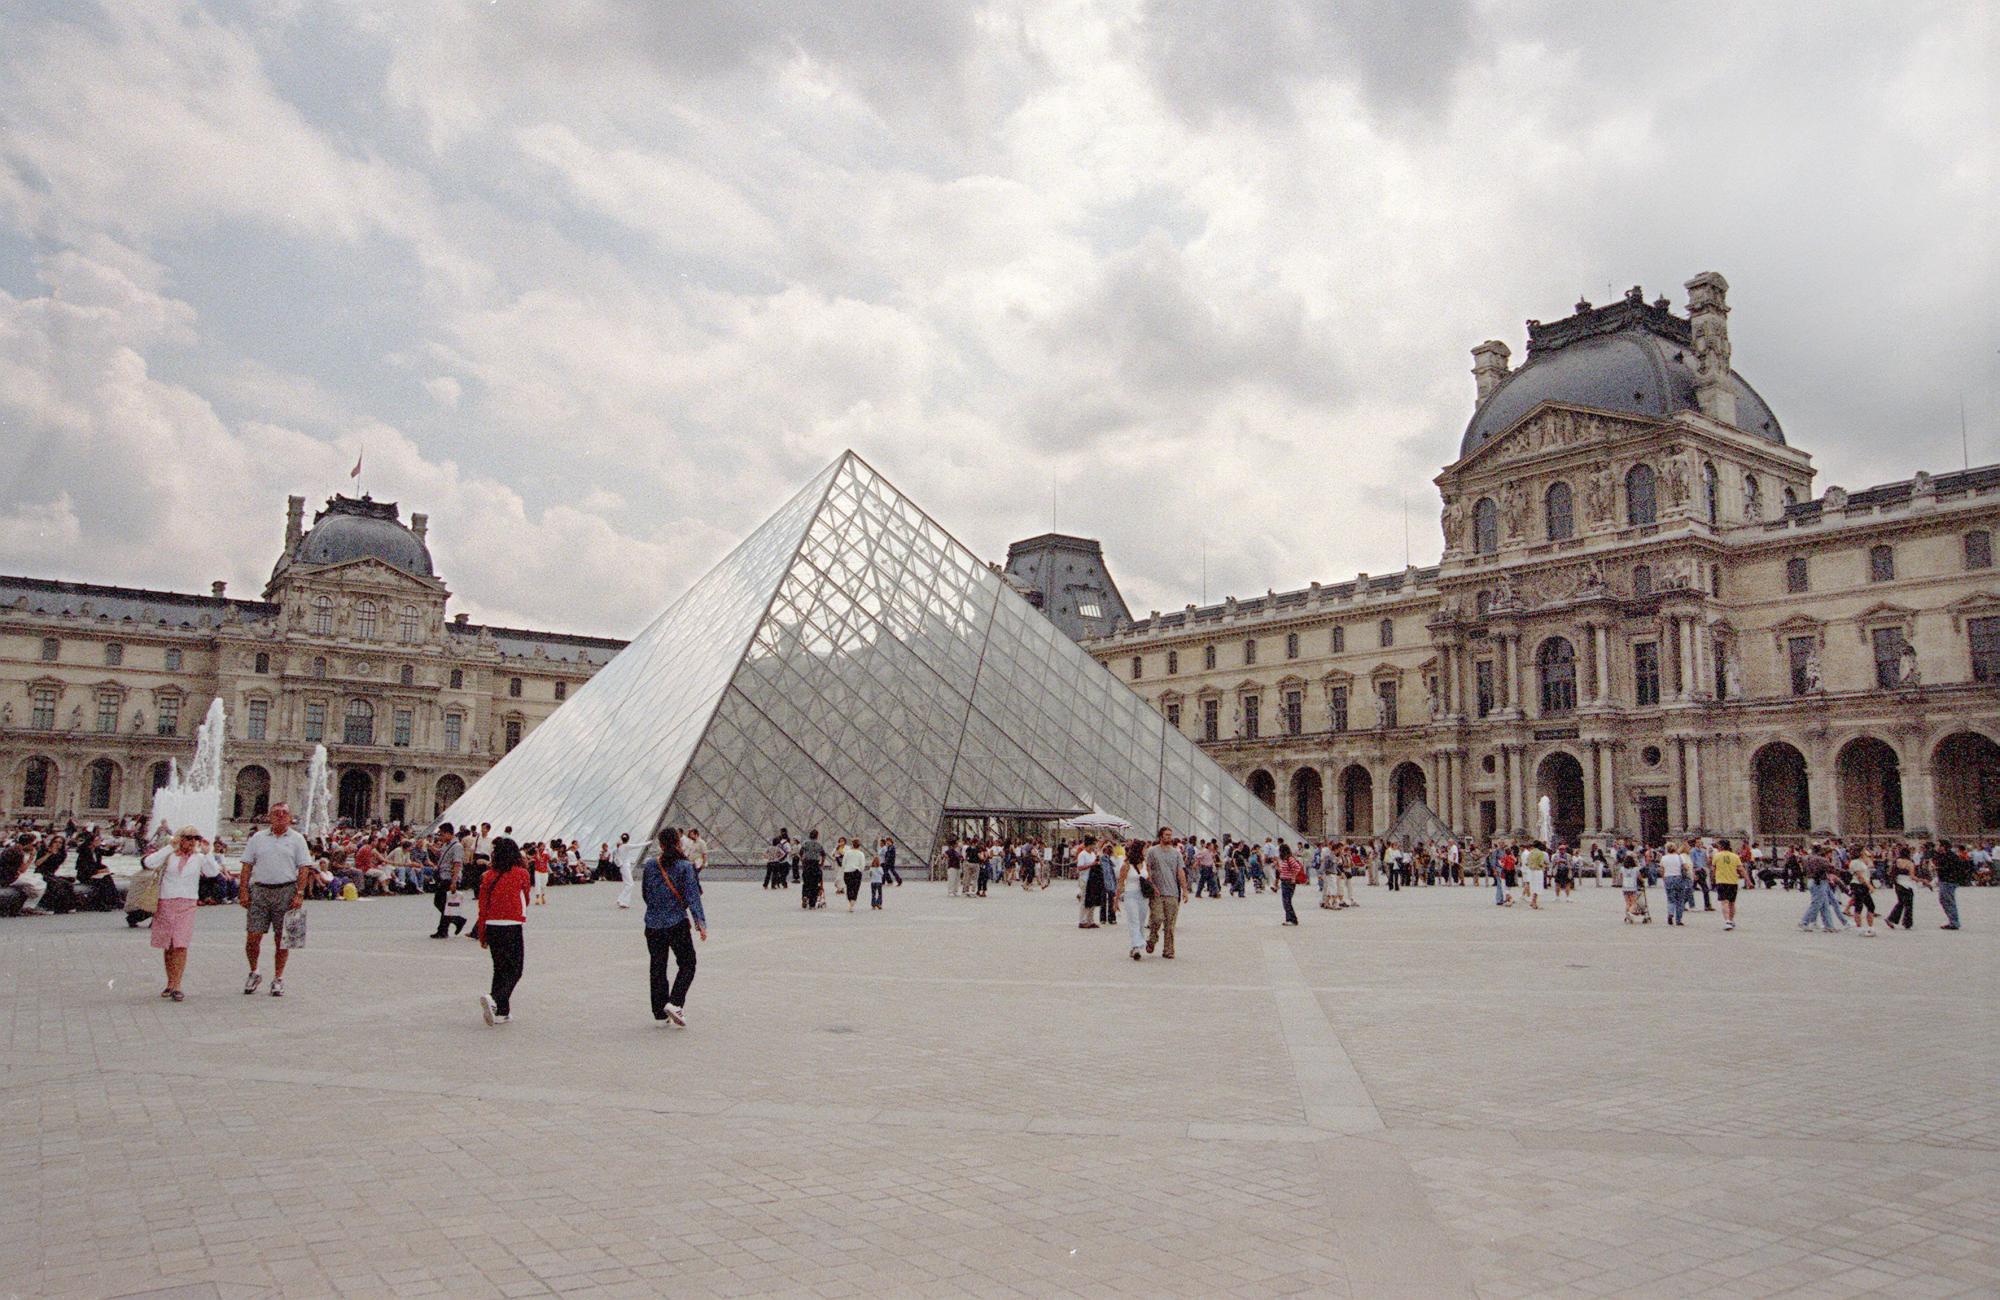 $!Vista general del museo del Louvre con la pirámide de cristal, en París. EFE/JAVIER LIZON